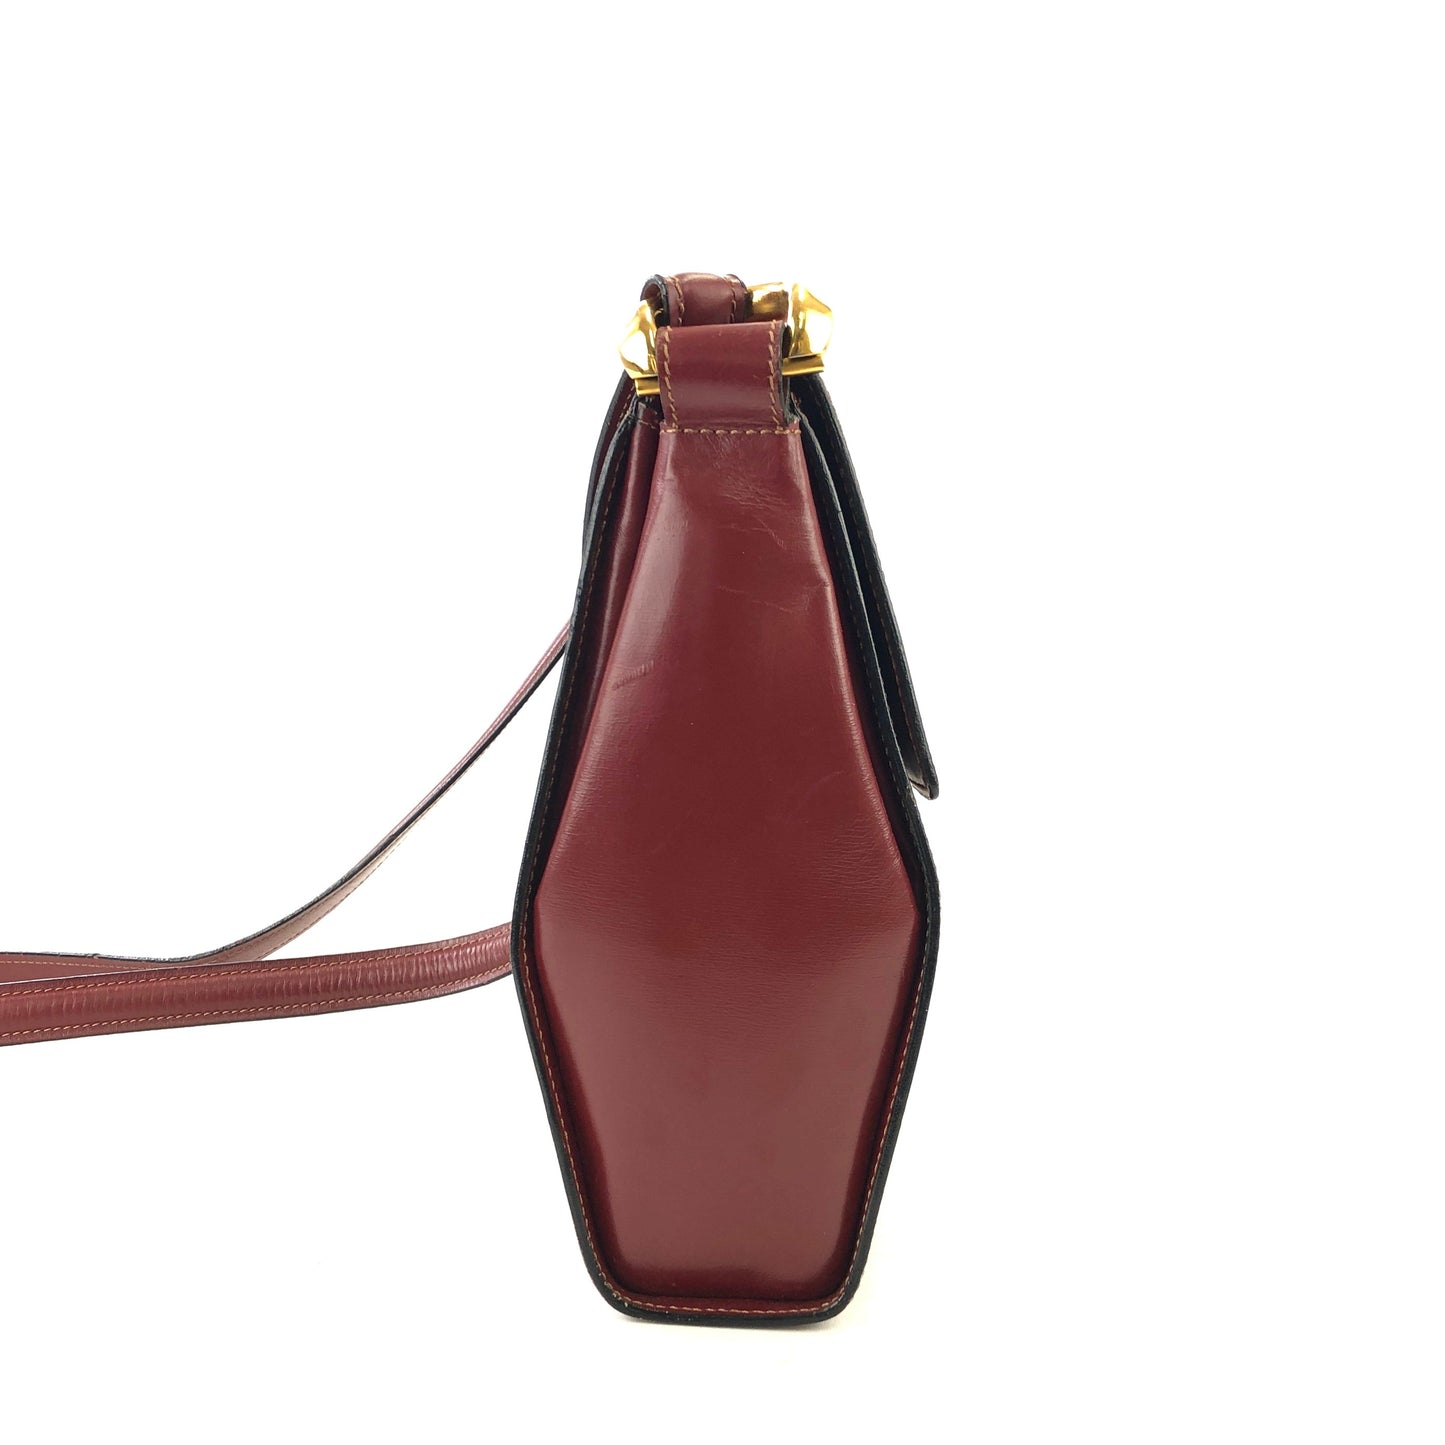 LOEWE logo embossed leather antique metal fittings shoulder bag wine red vintage old u24yeh